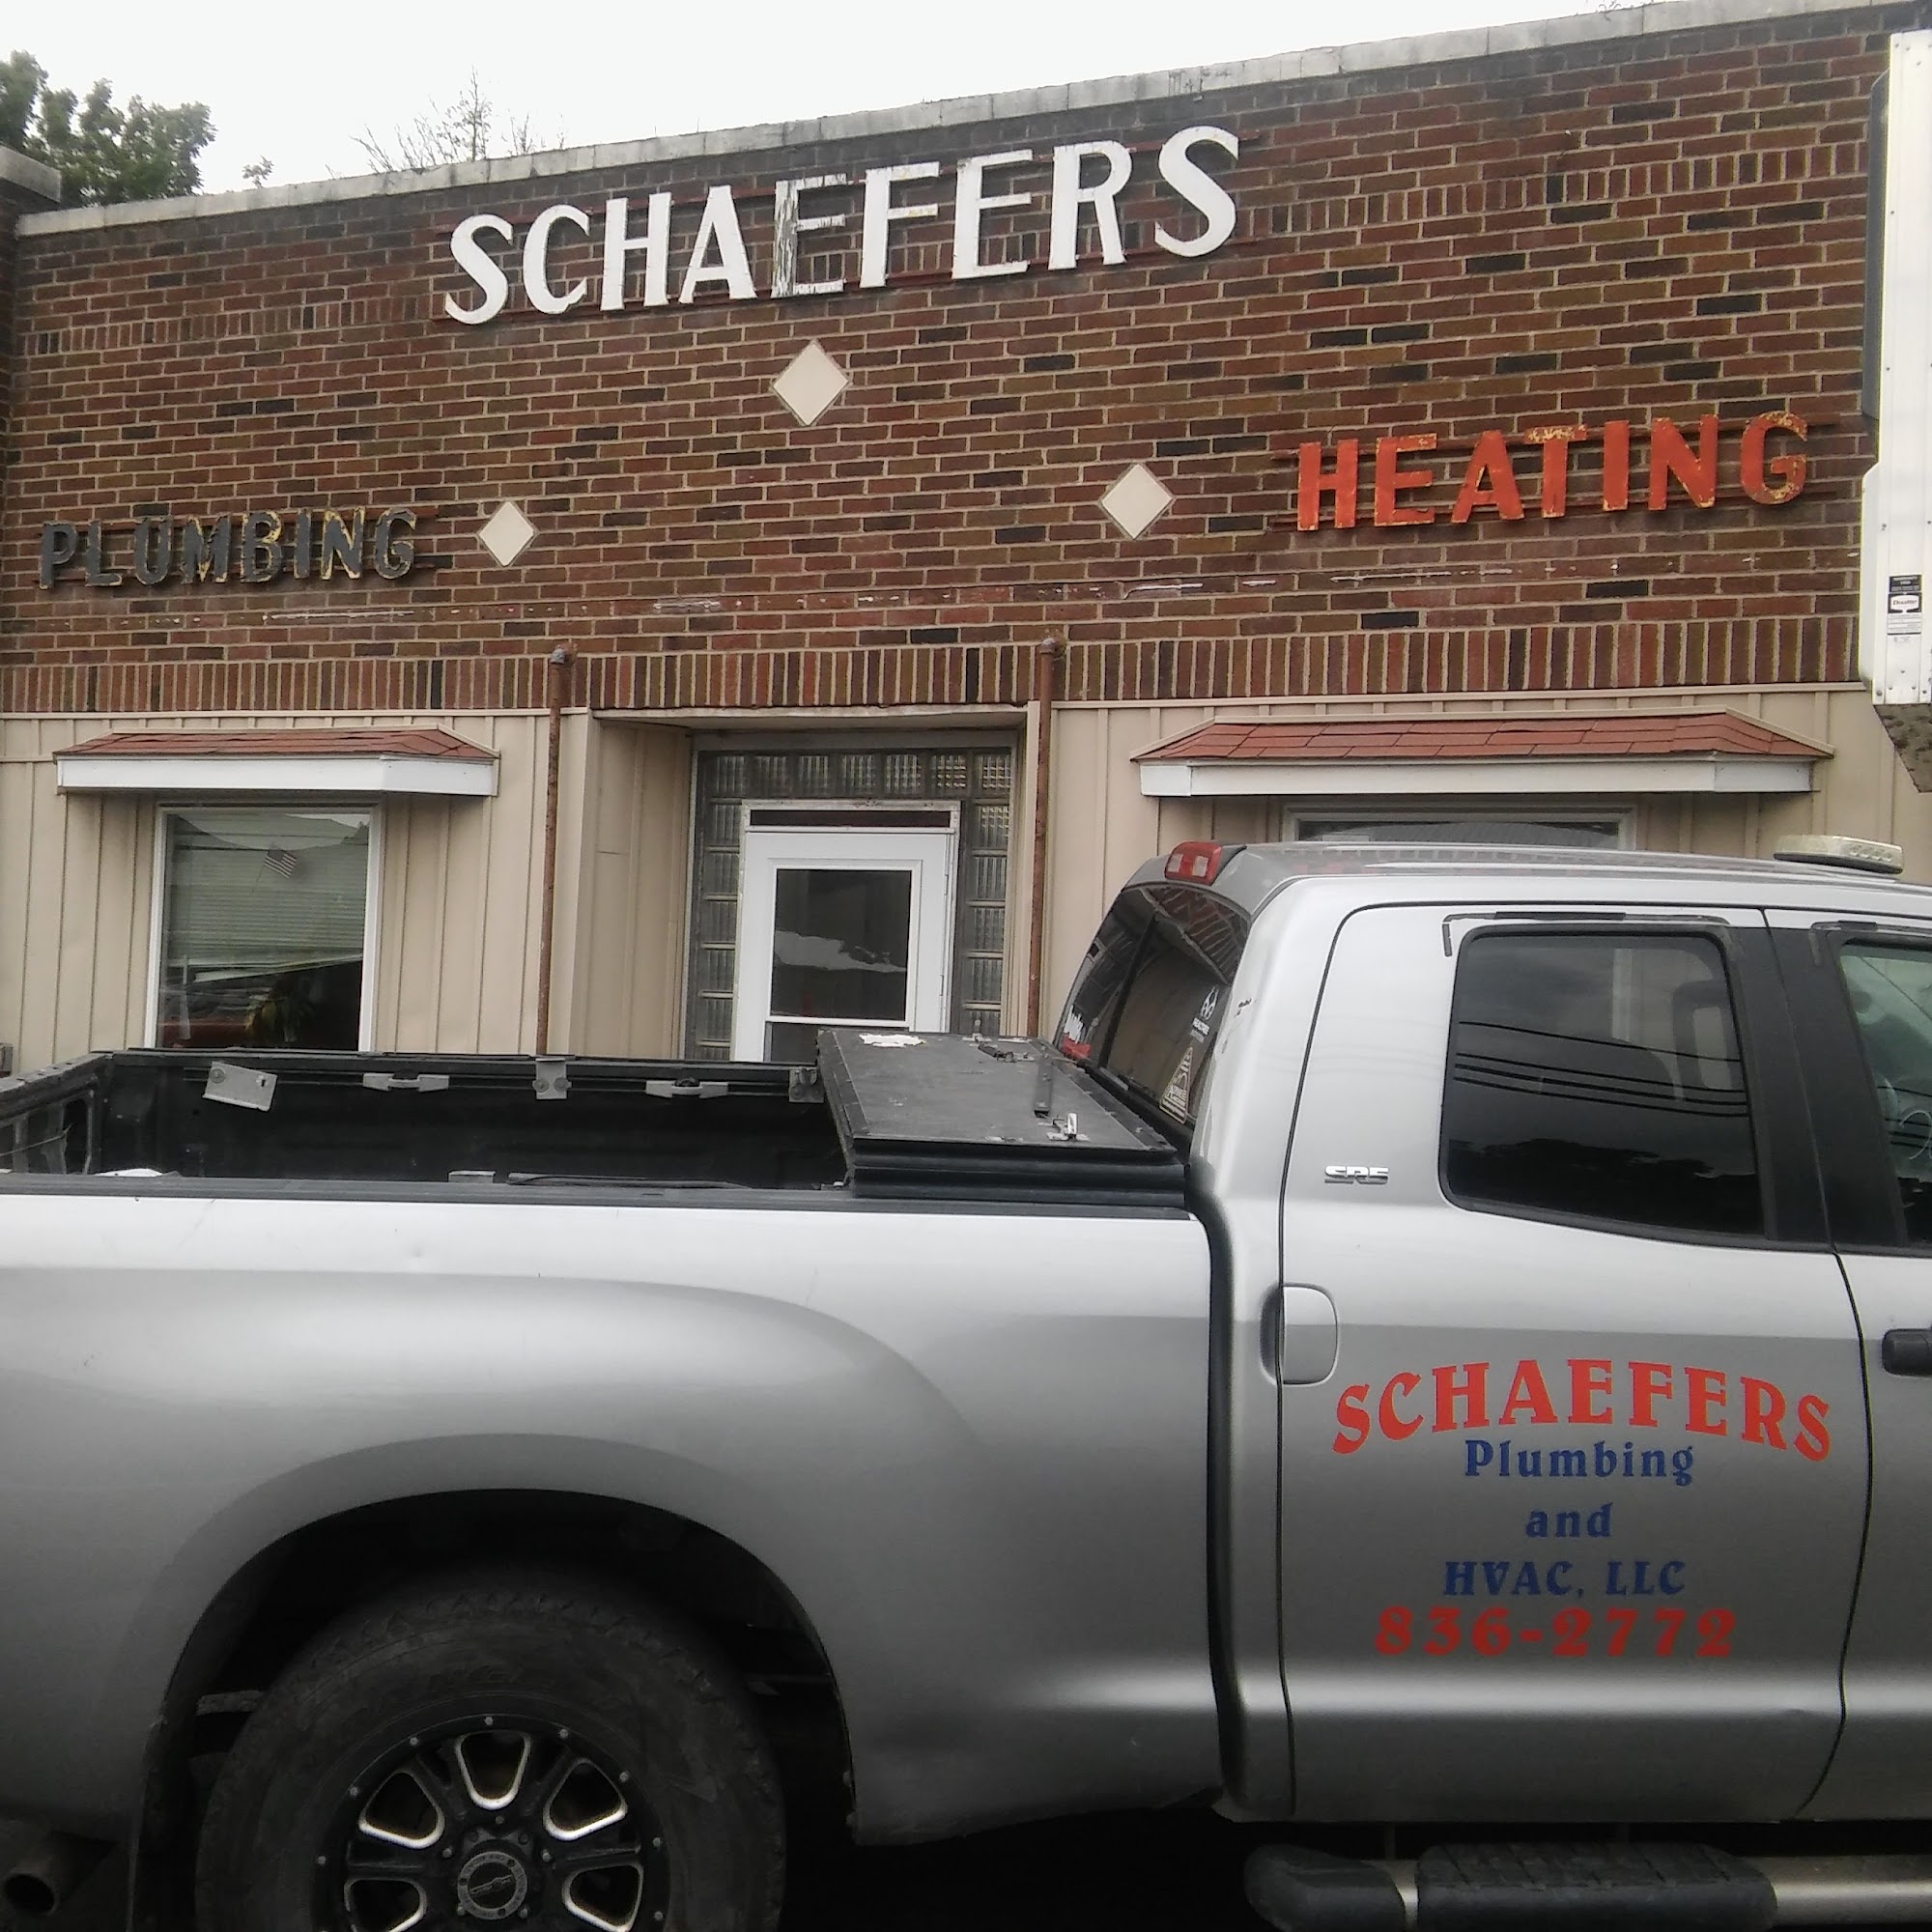 Schaefer's Plumbing & HVAC 511 Hunter Hwy, Tunkhannock Pennsylvania 18657